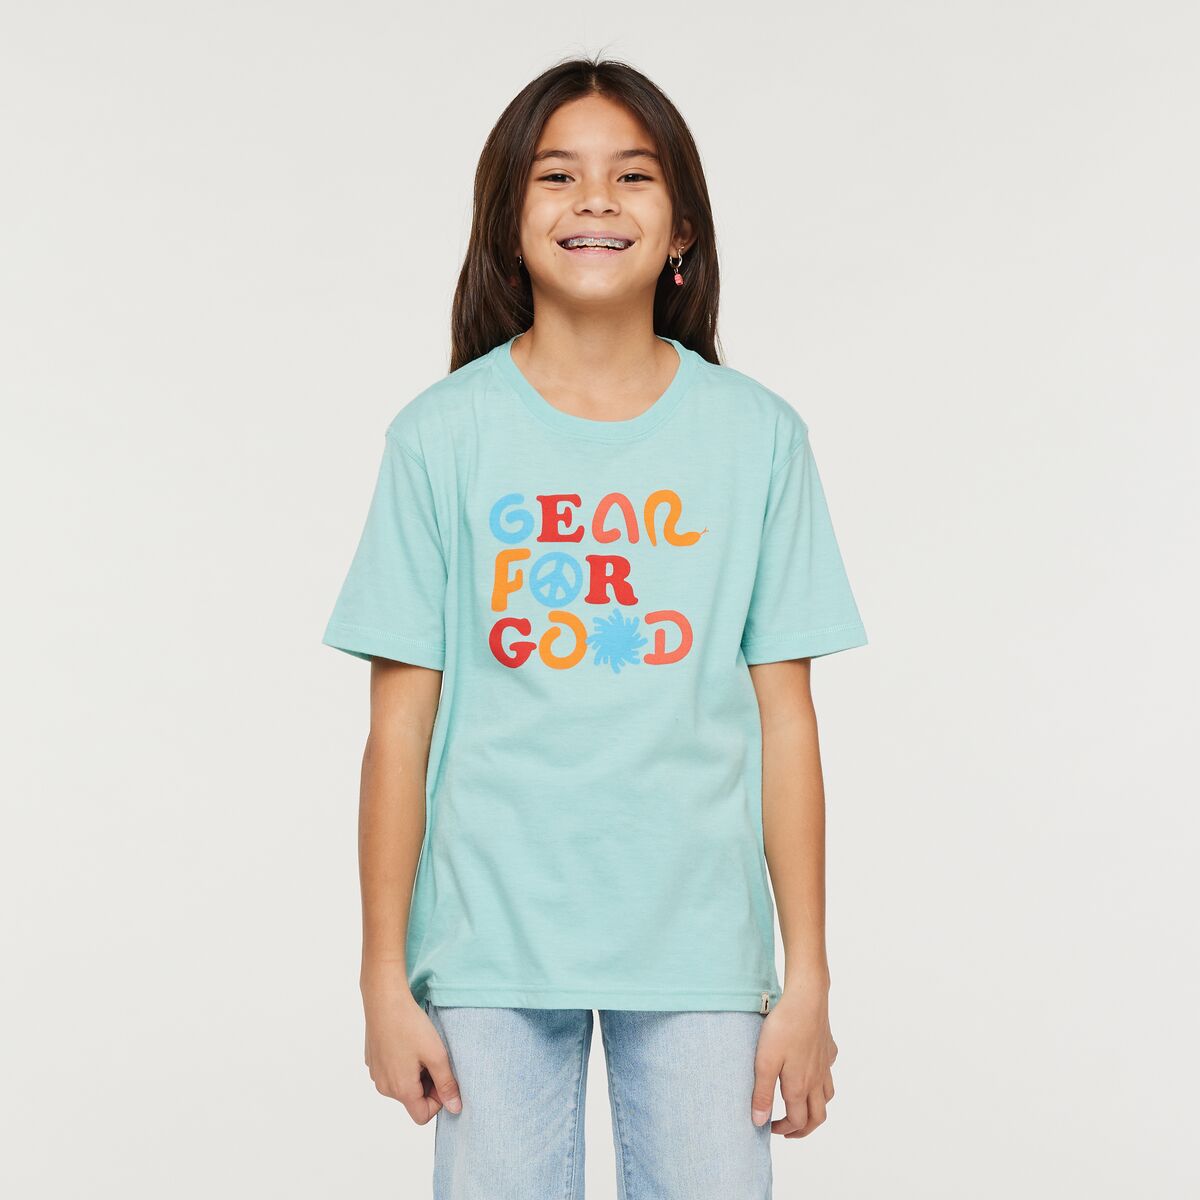 Kids&#39; Gear for Good T-Shirt